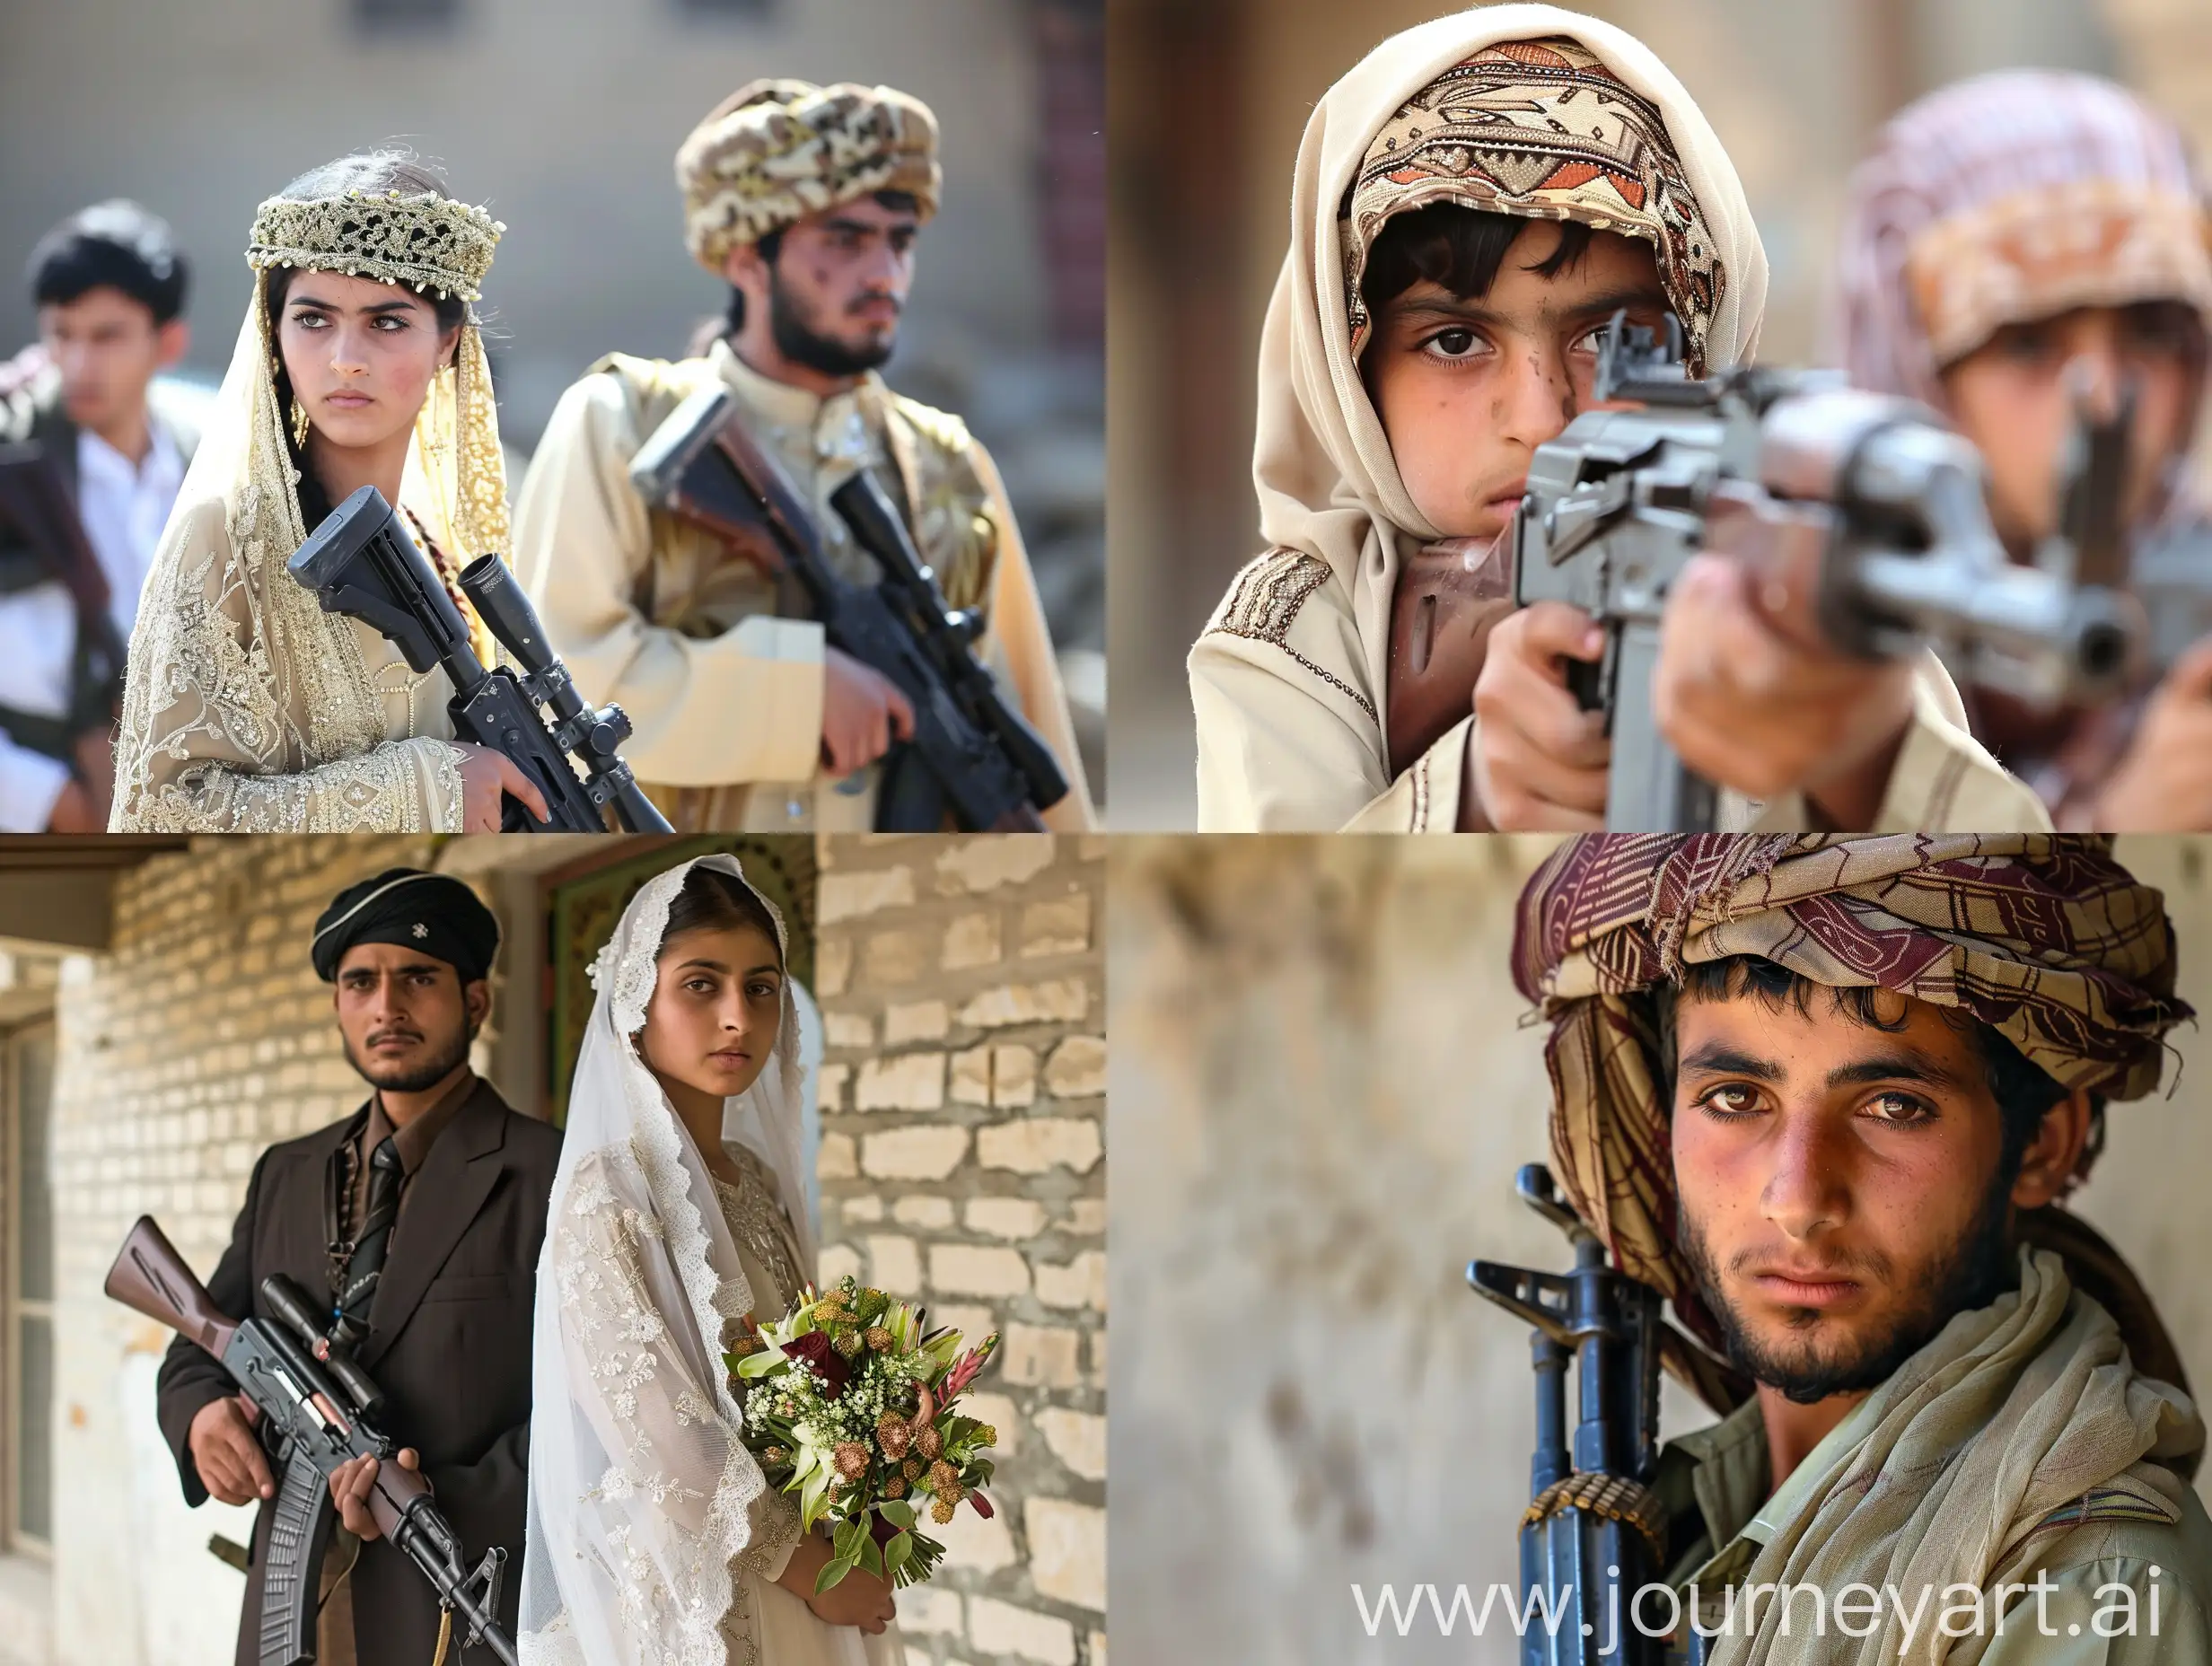 Traditional-Pashto-Wedding-Celebration-with-Rifle